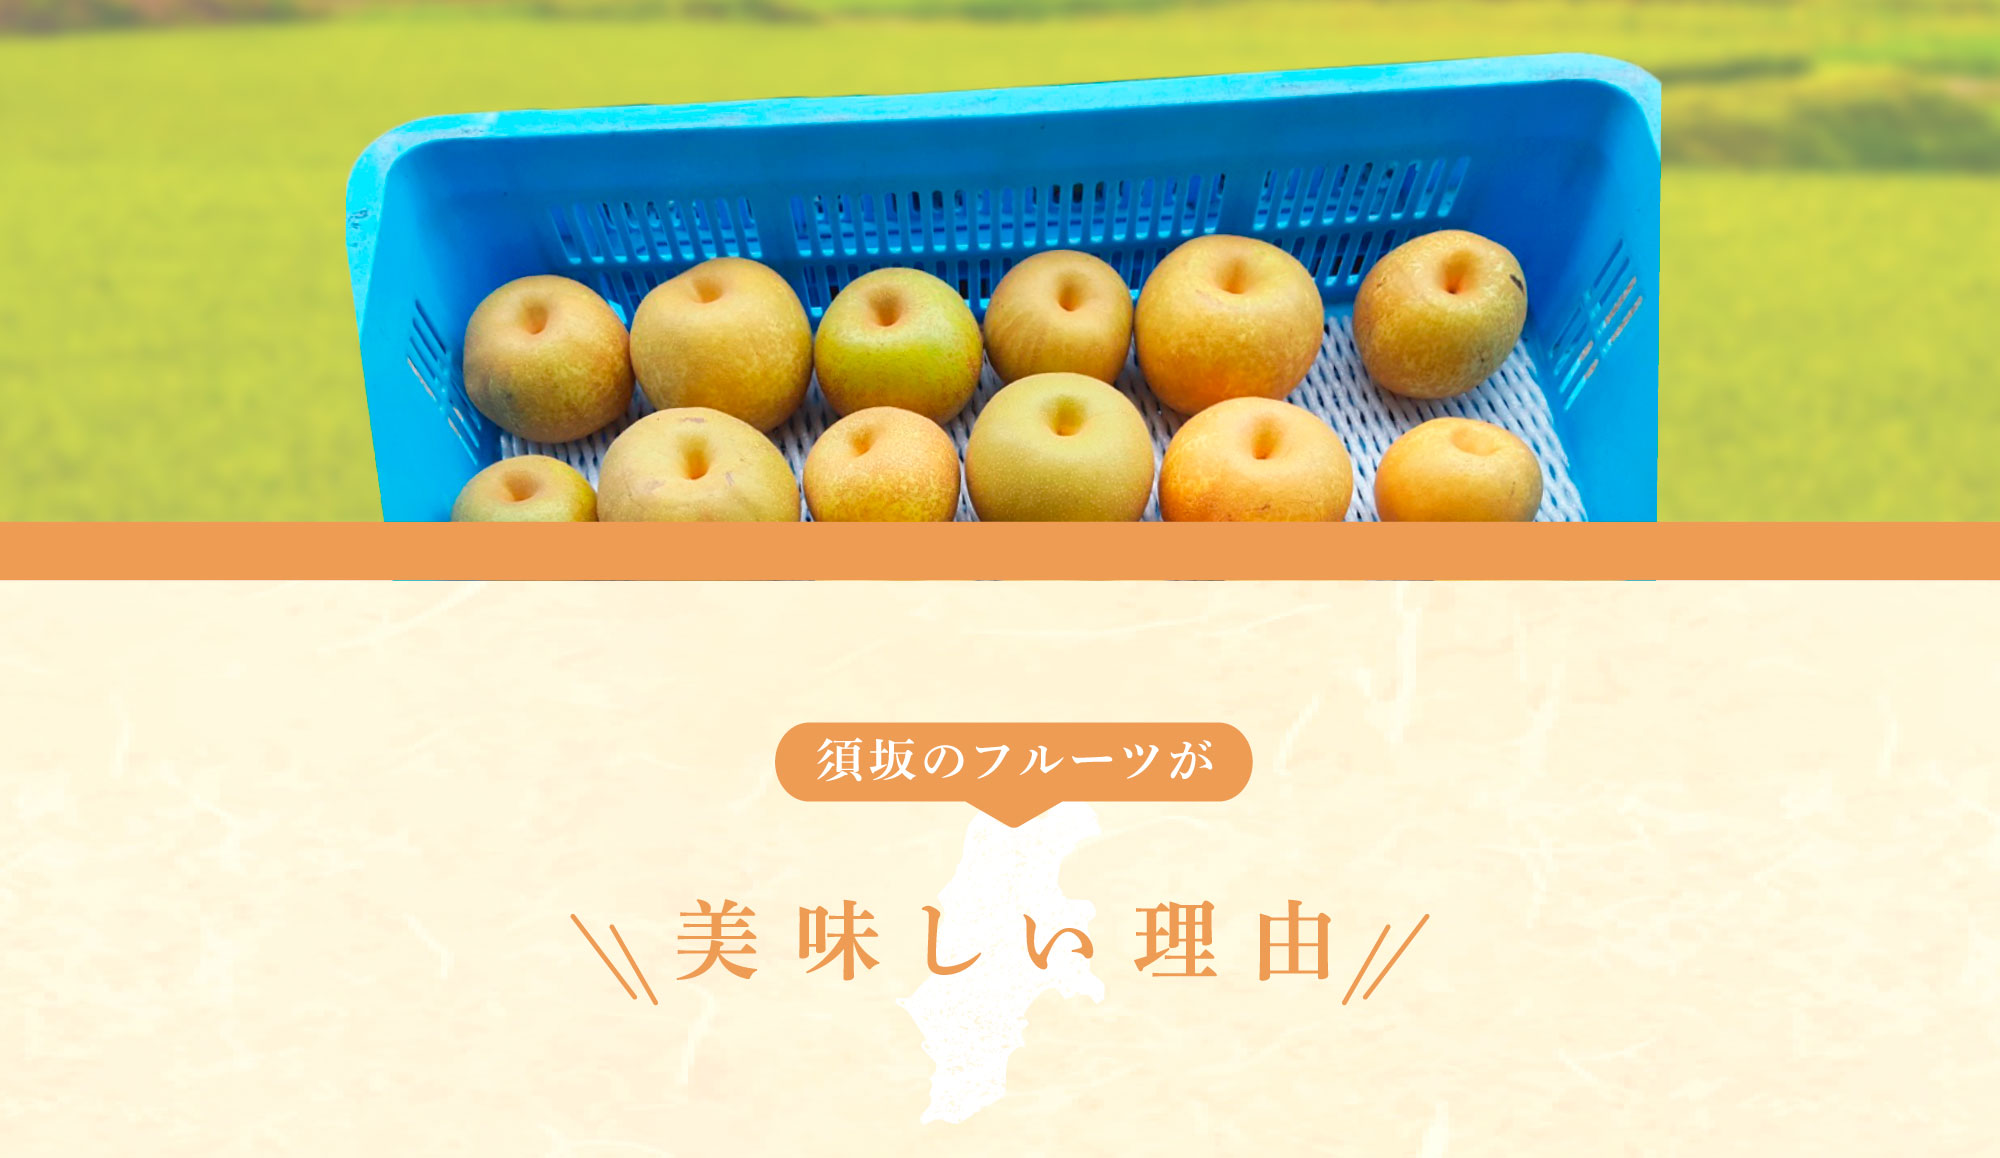 長野県の希少梨「南水(なんすい)」3kg・5kgの通販